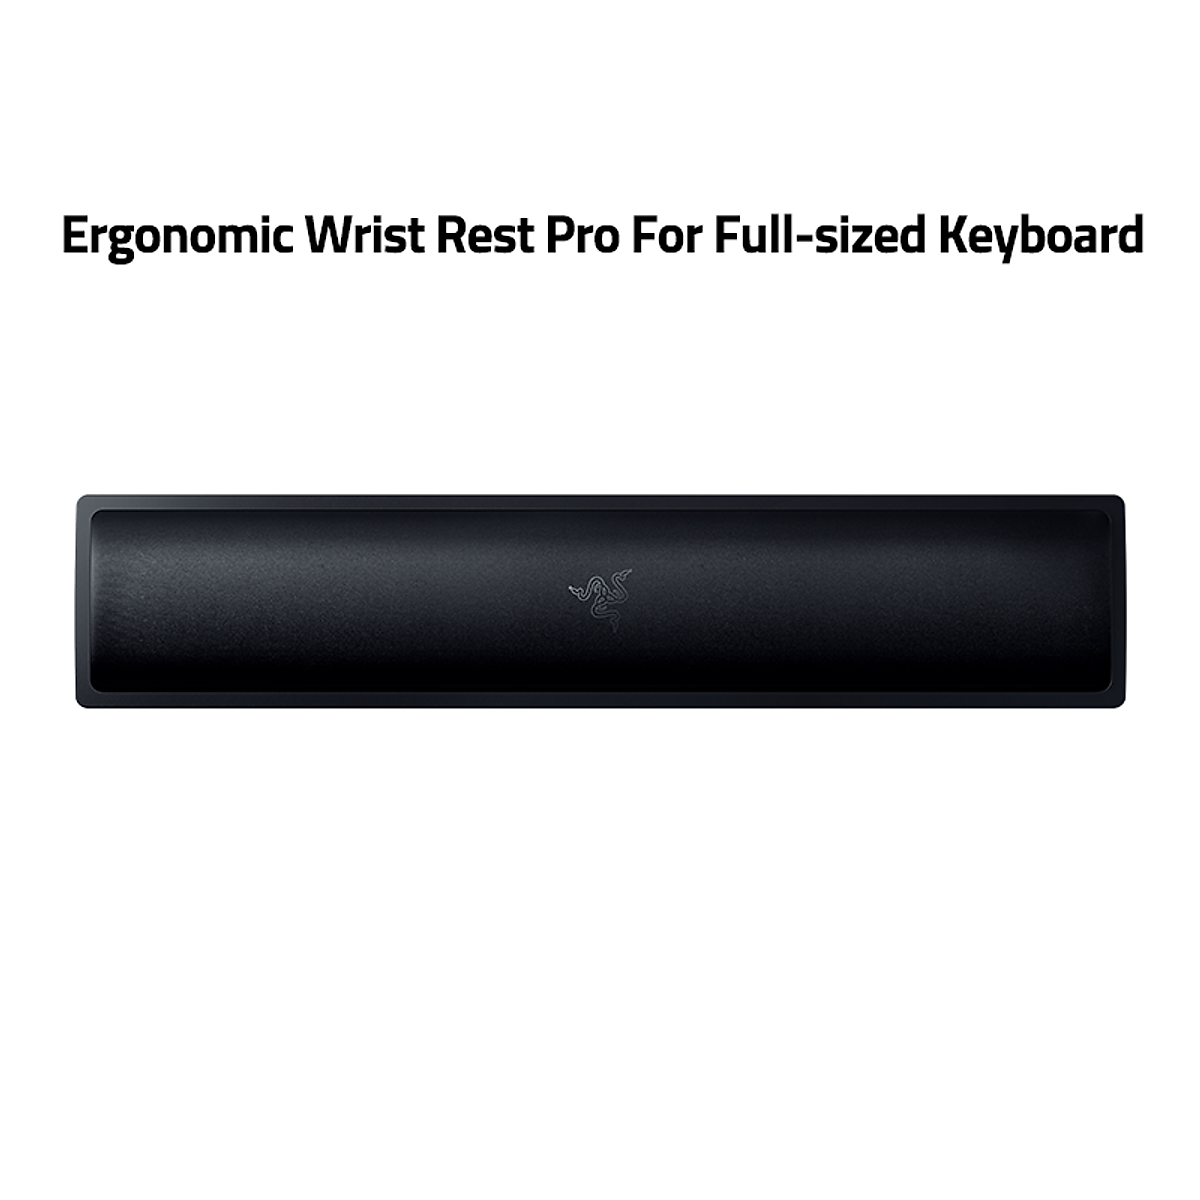 Kê tay bàn phím Razer Ergonomic Wrist Rest Pro - Hàng chính hãng